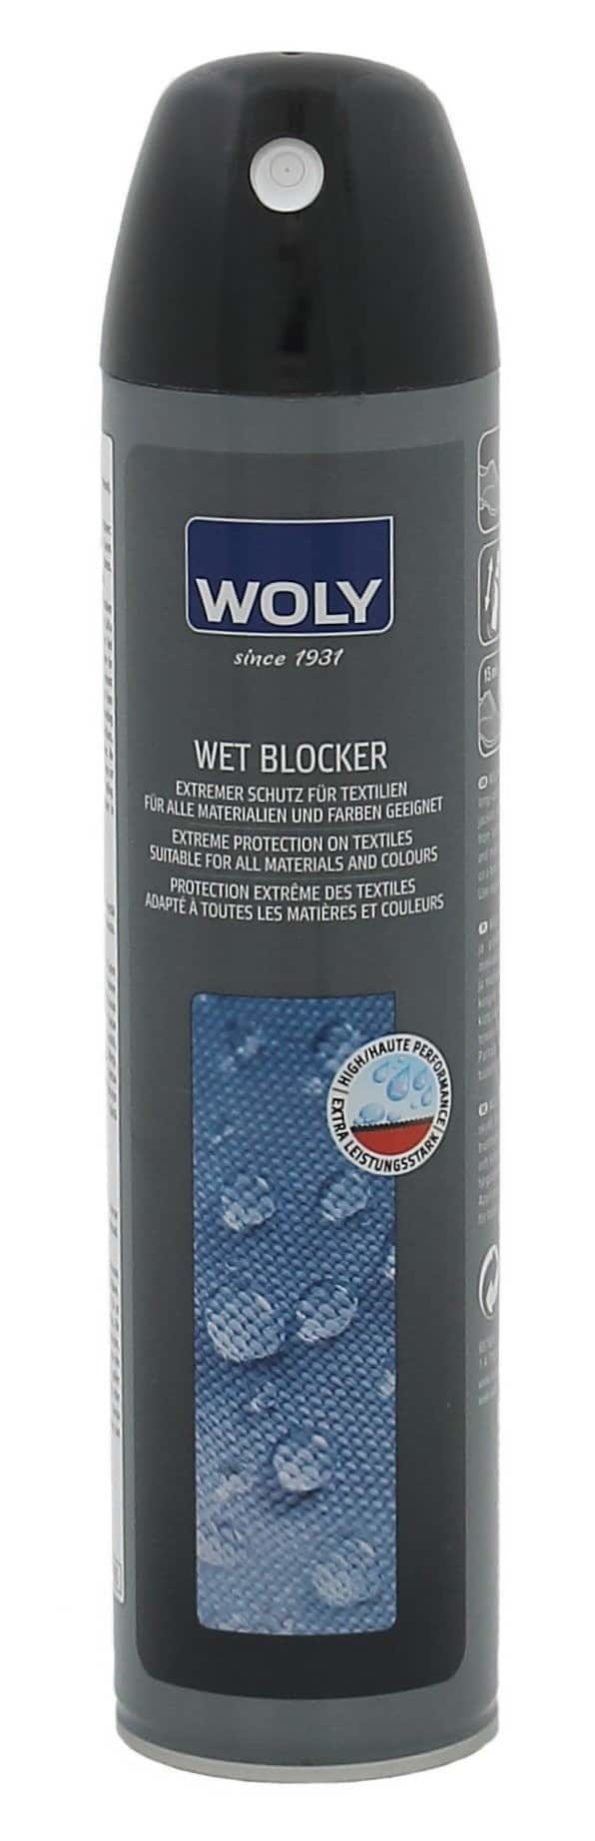 Woly-wet-blocker